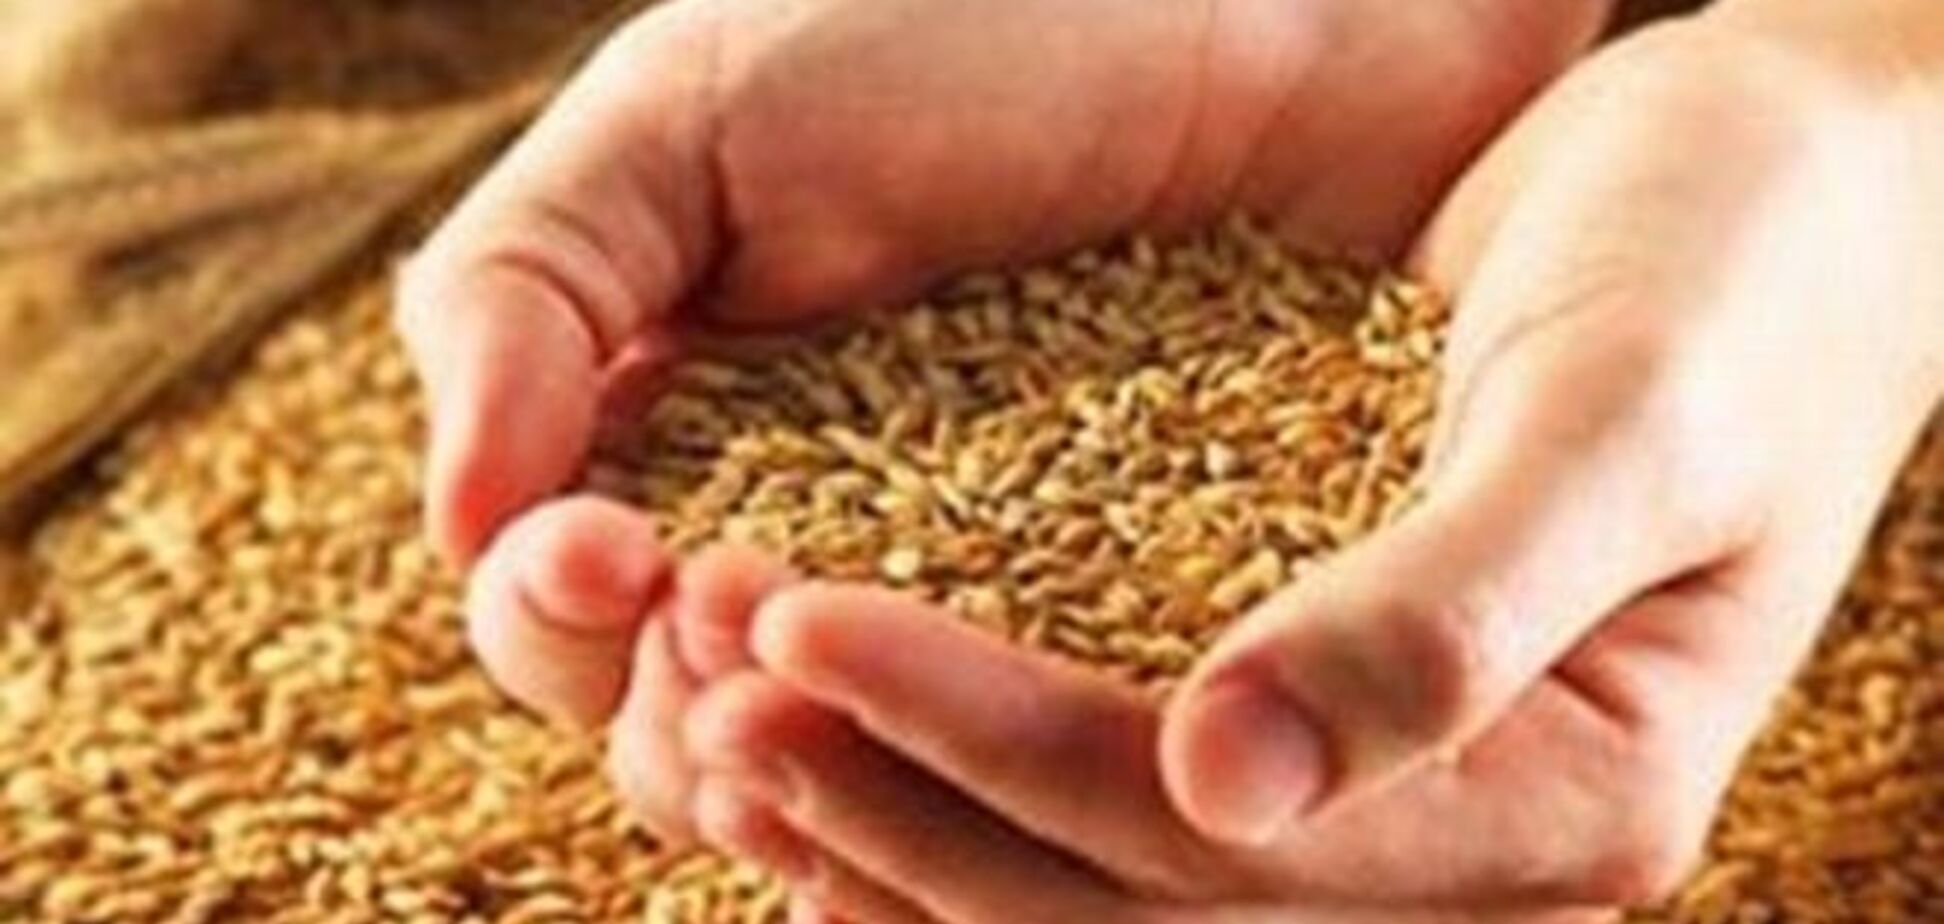 Украина вошла в тройку крупнейших мировых экспортеров зерна